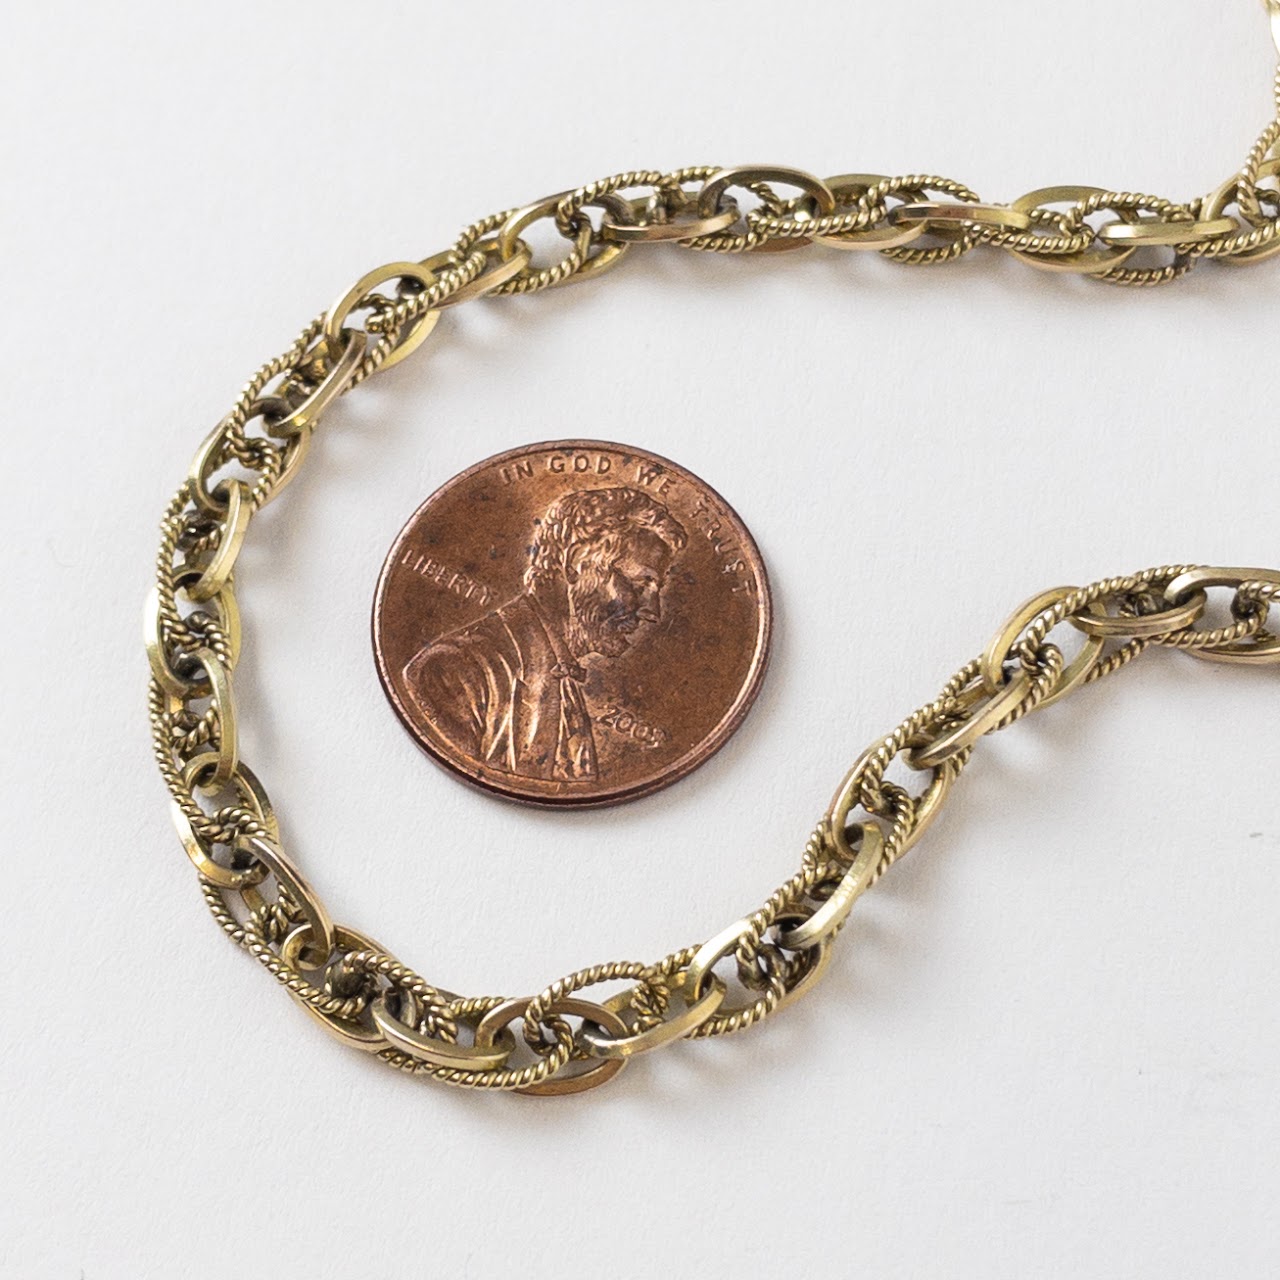 14K Gold Fancy Link Necklace